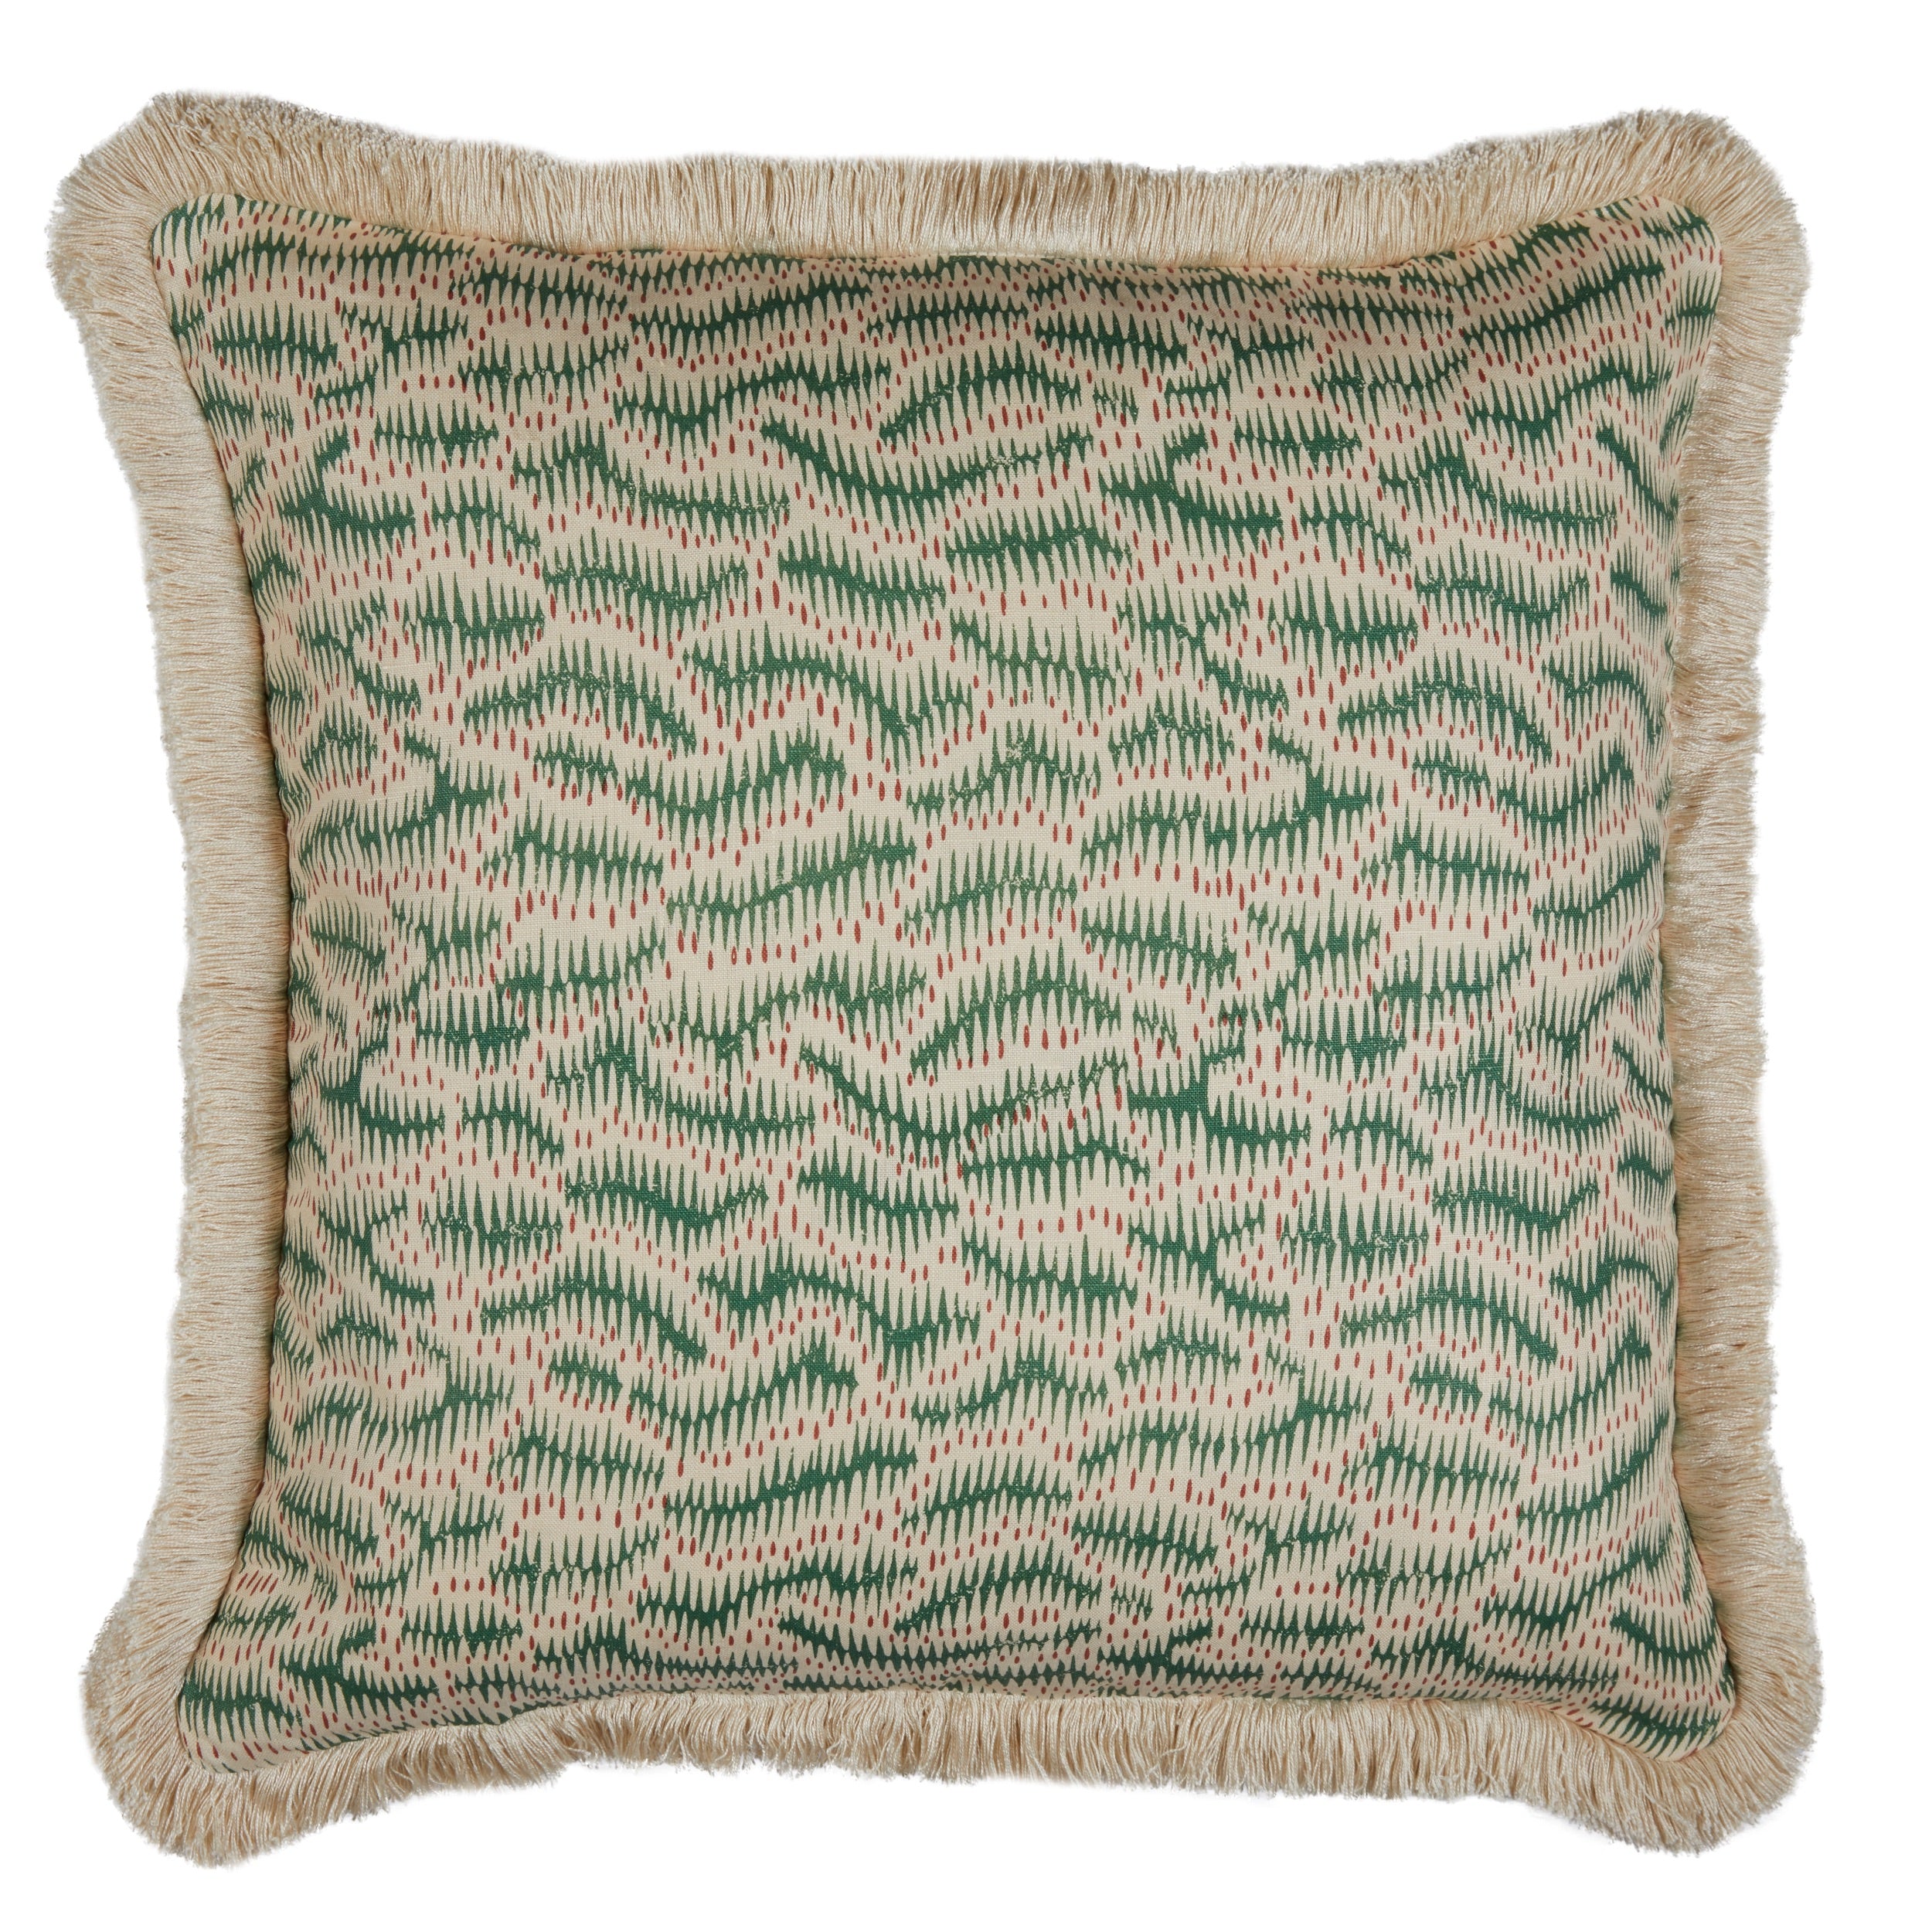 Daphne's Feathers Emerald Cushion with a Brush Fringe